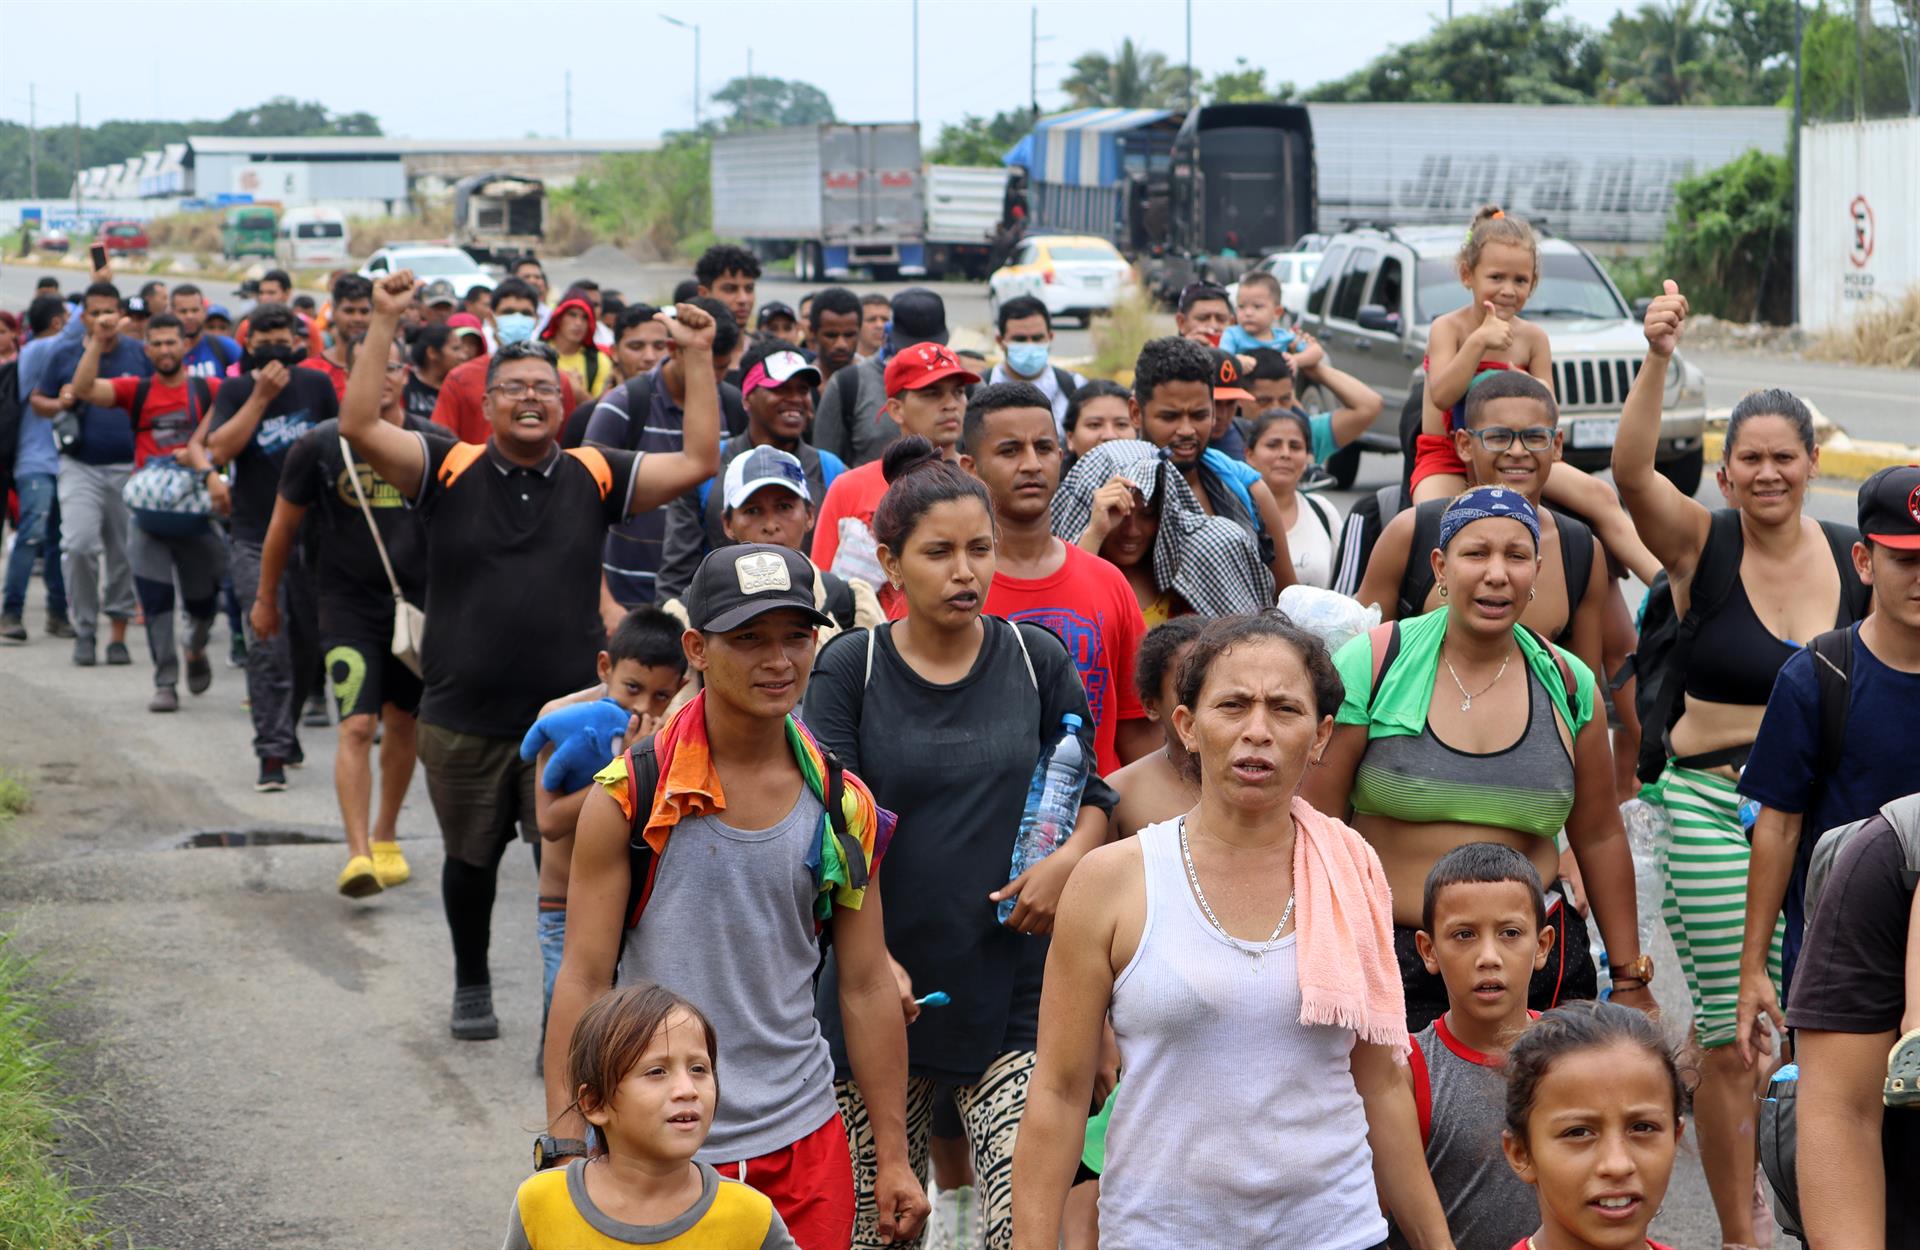 caravana migrantes mexico fortera eeuu